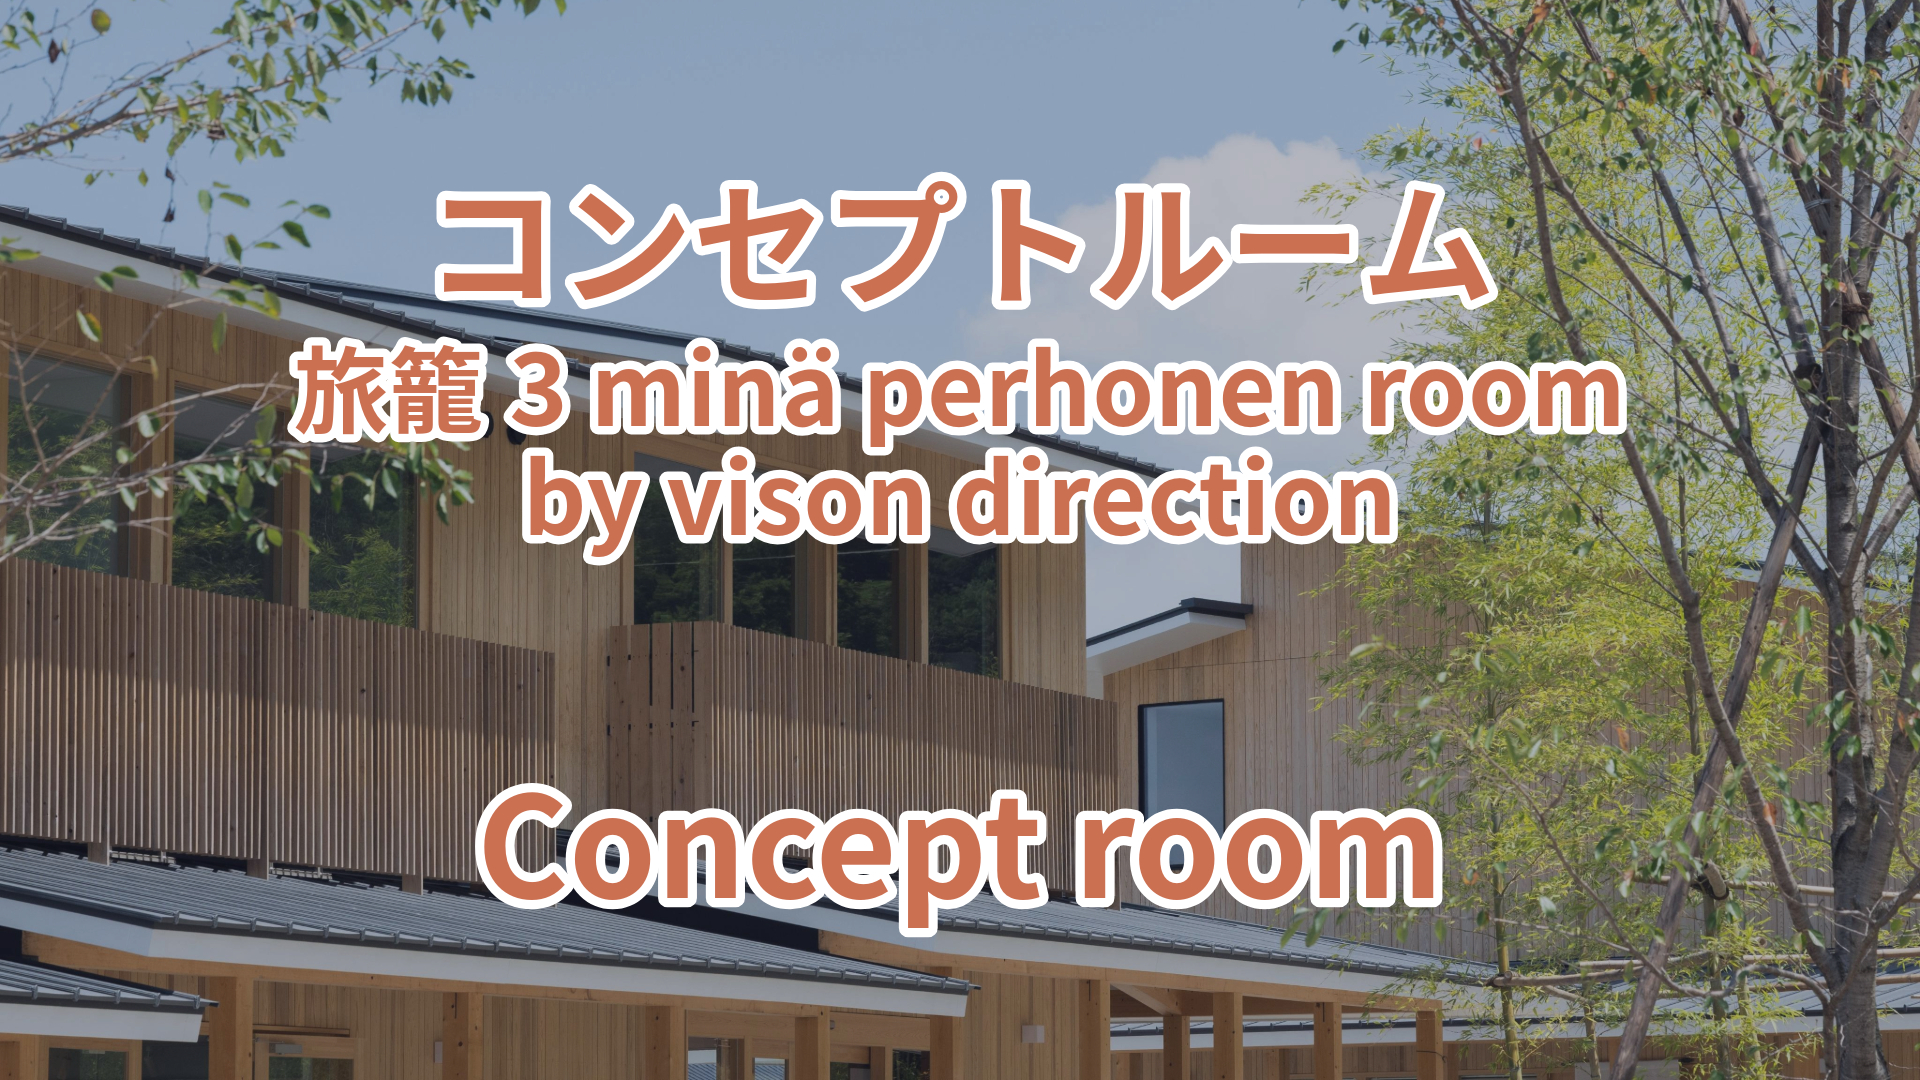 コンセプトルーム 旅籠3 minä perhonen room by vison direction